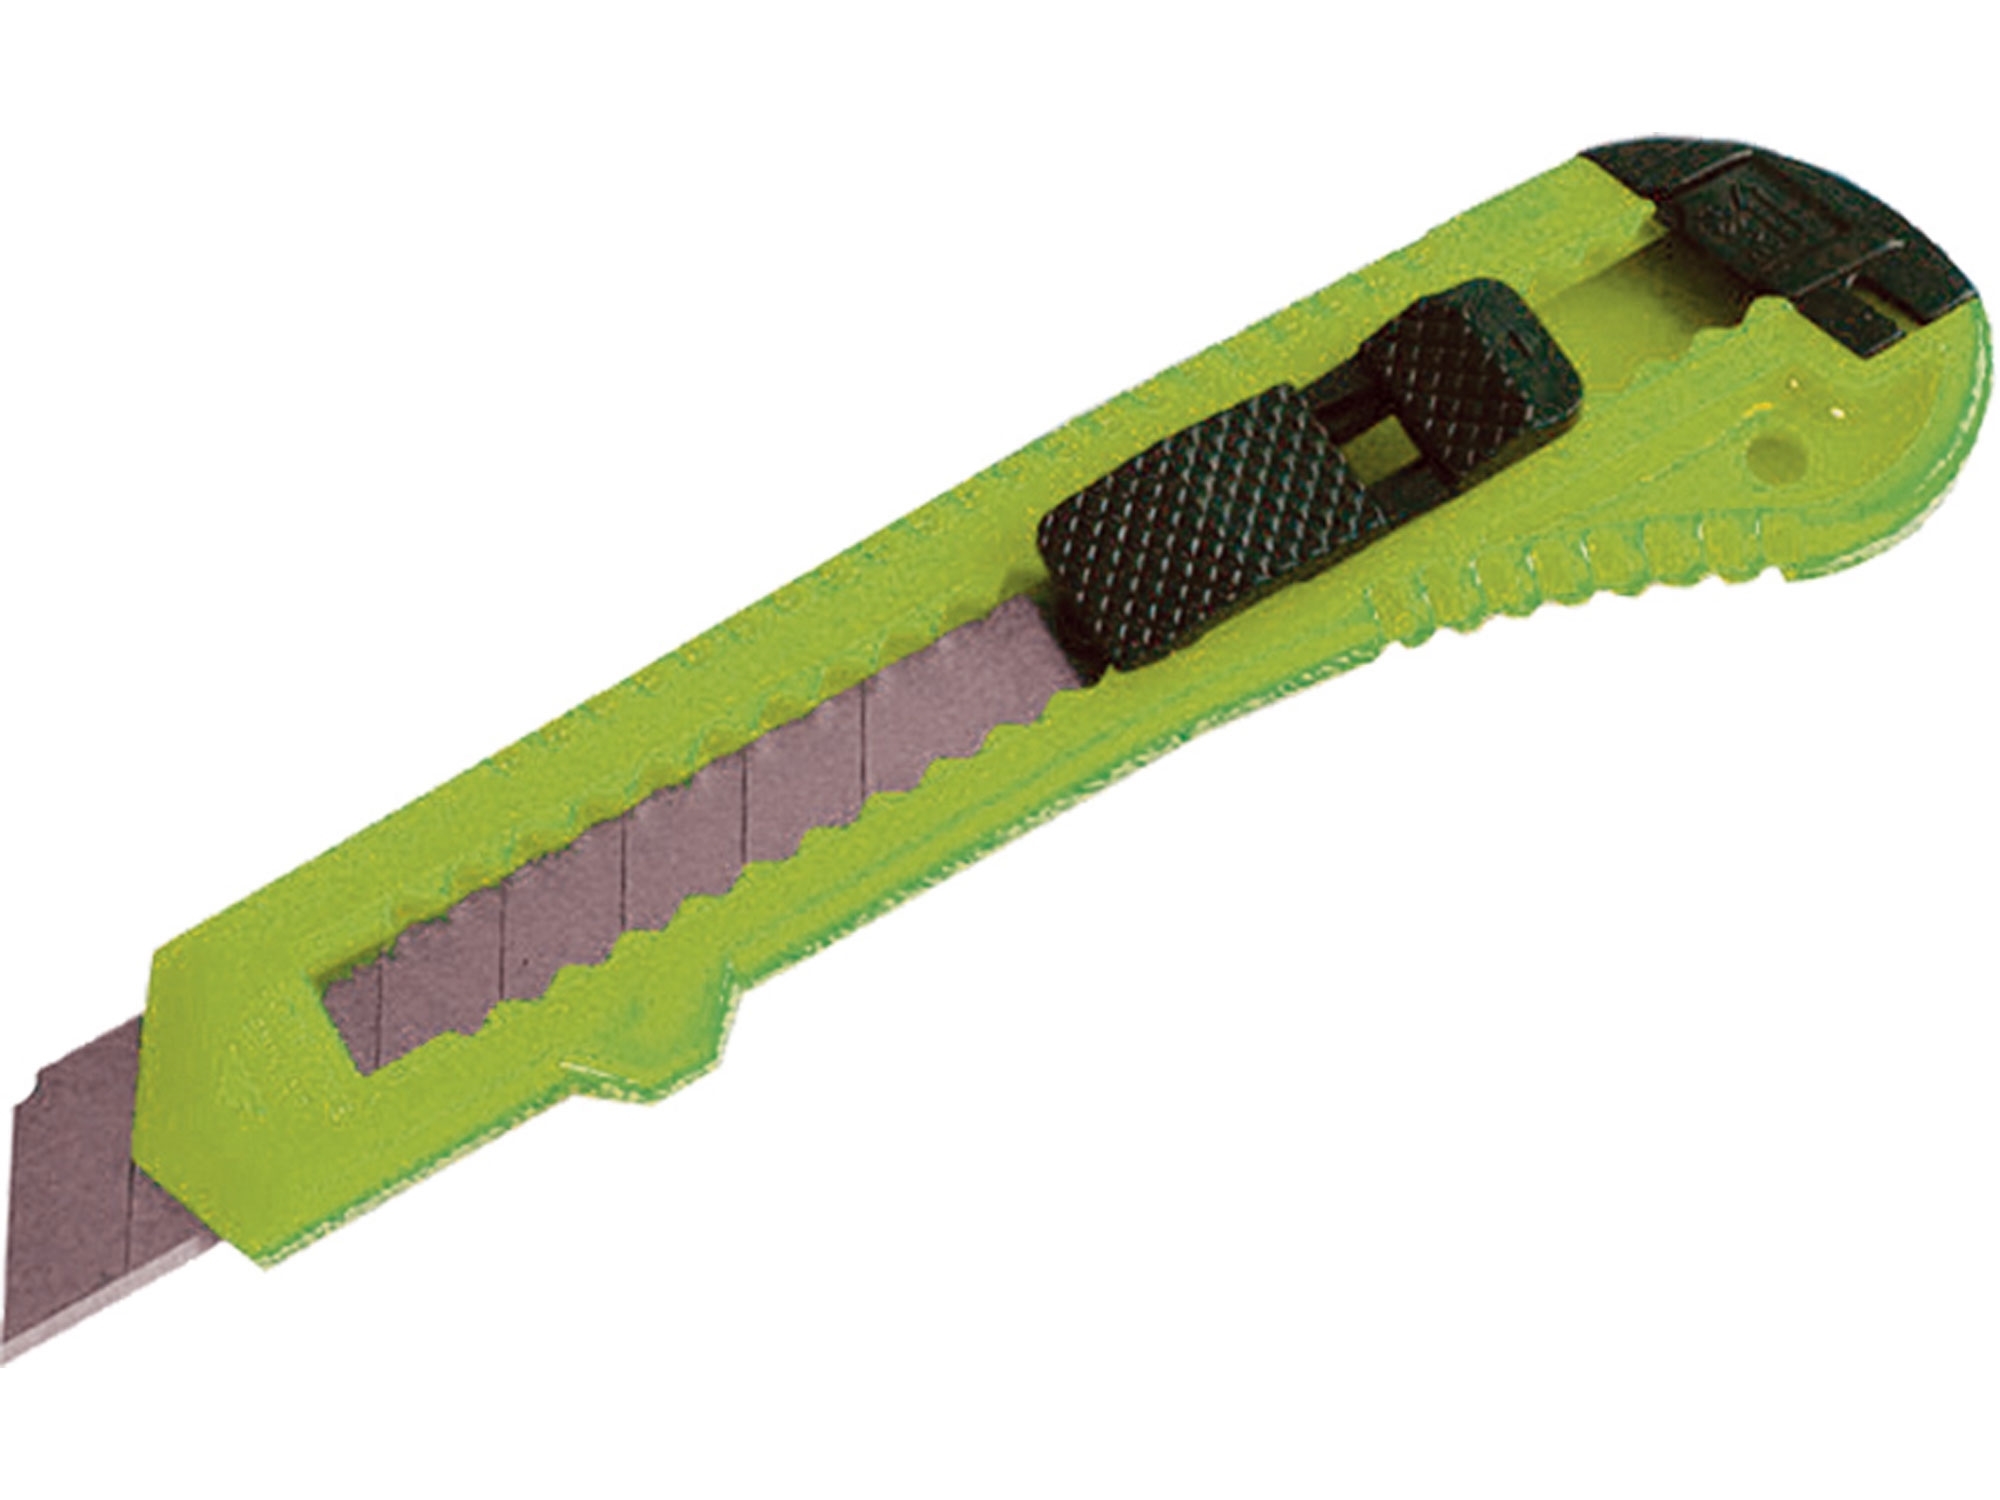 Ulamovací nůž 18mm zelený Extol Craft 9129